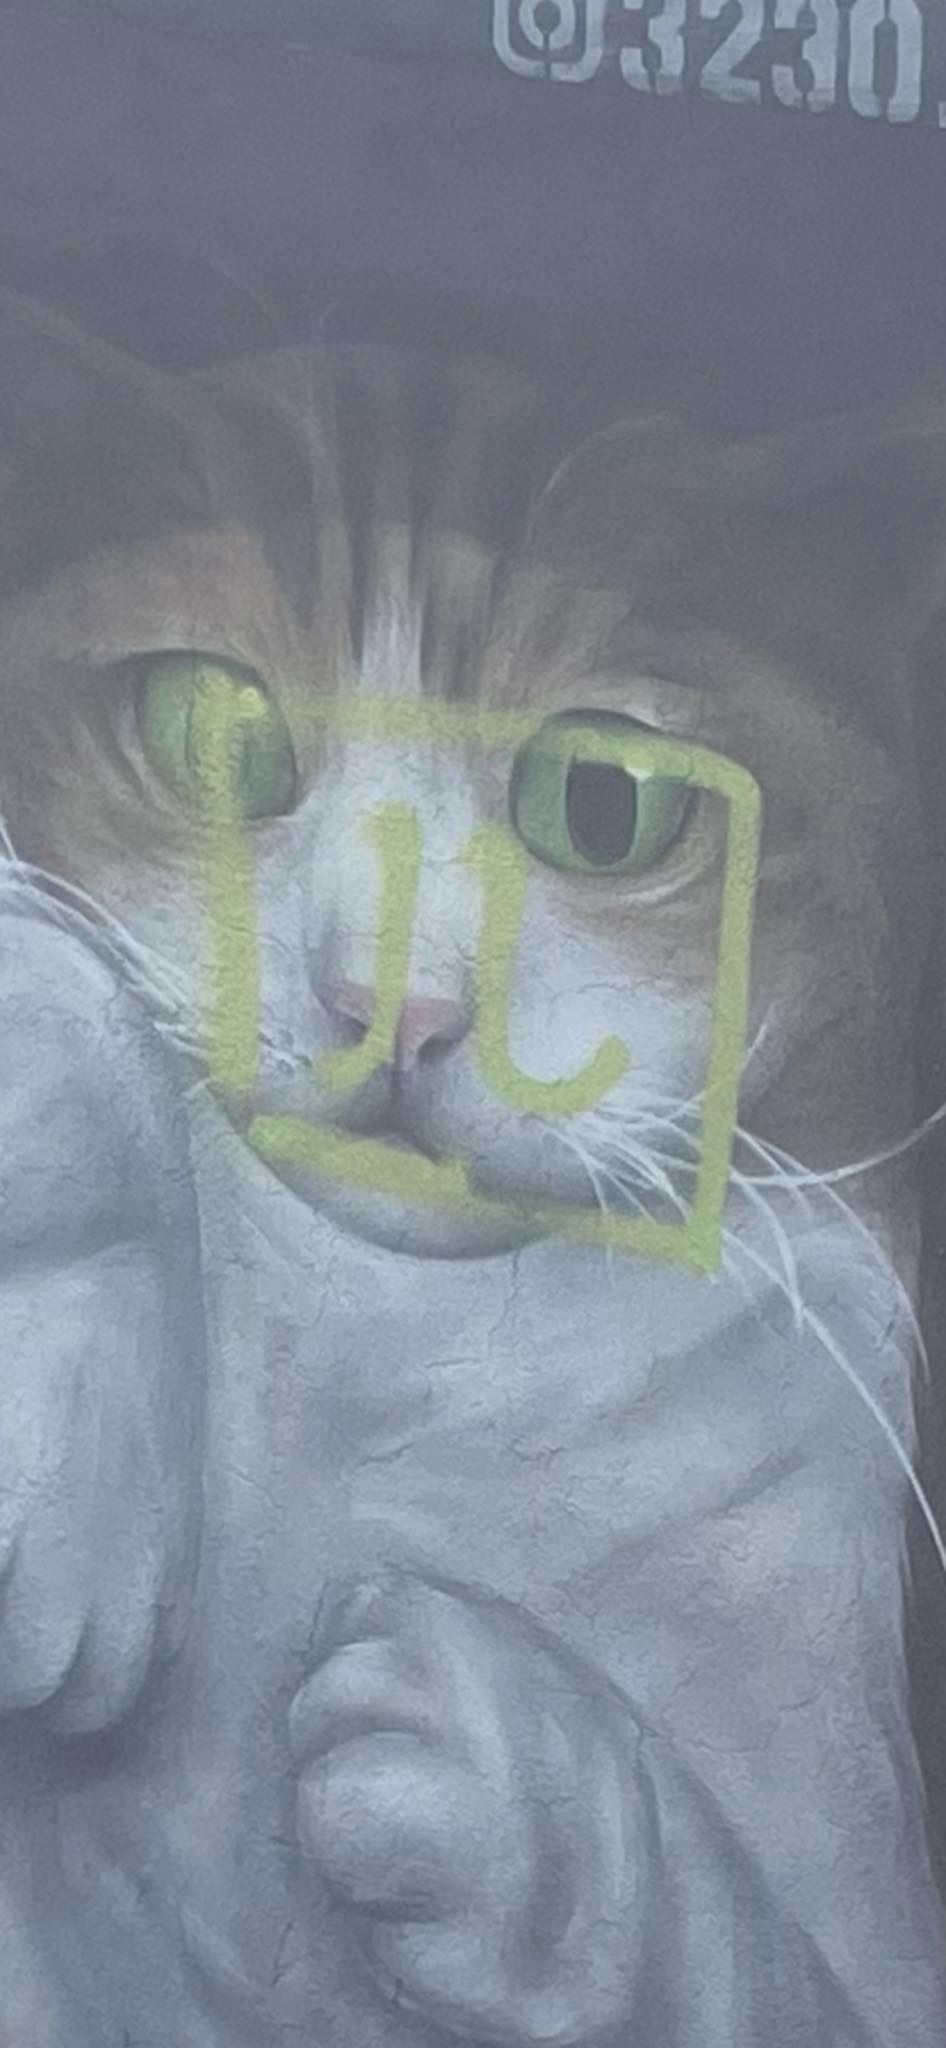 貓咪面部被人用綠色油漆噴上一個像「四」字的符號，非常礙眼。